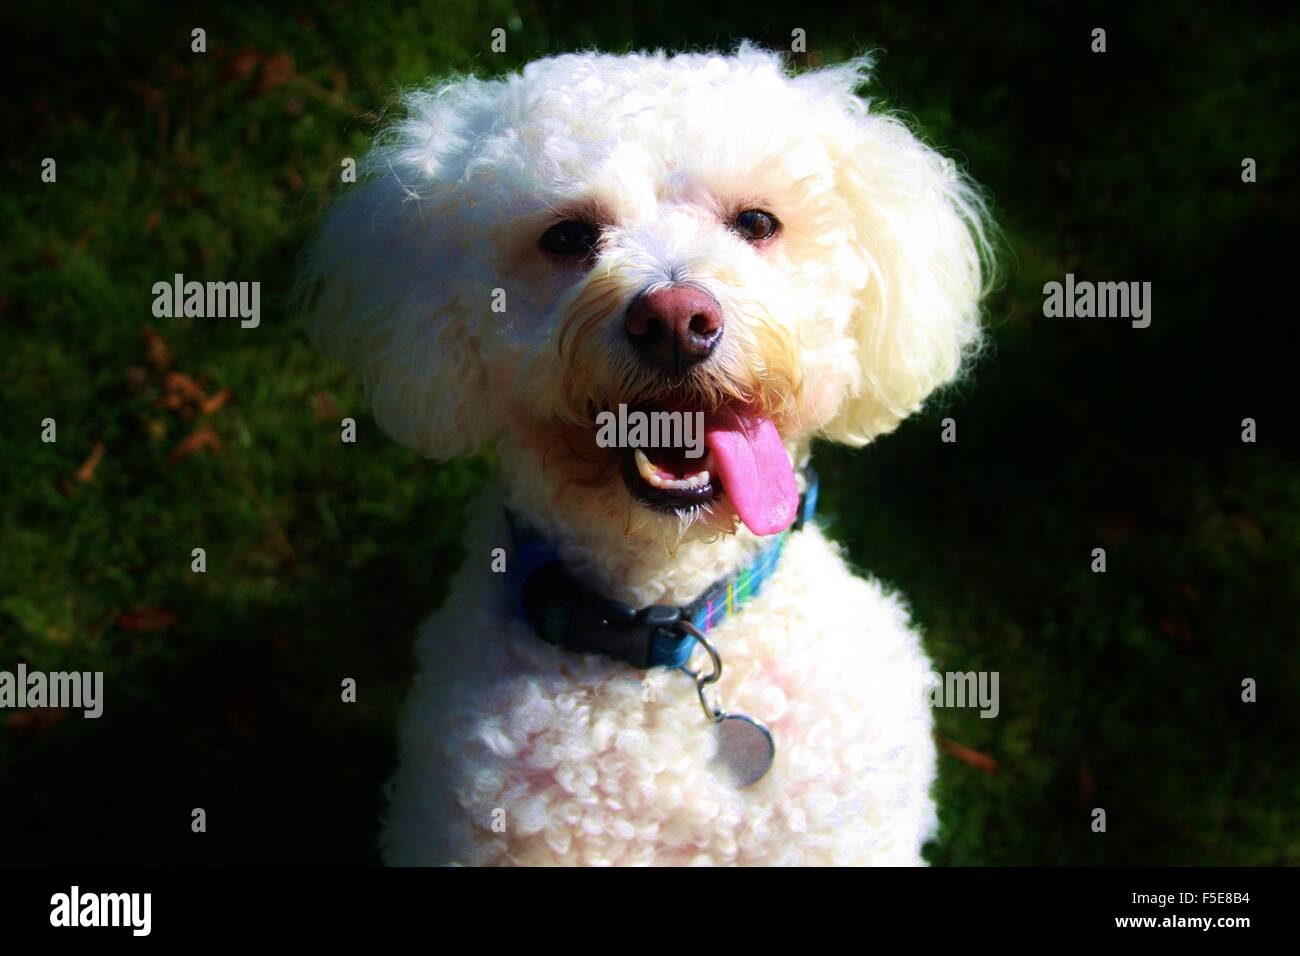 bichon frise, white dog, fluffy dog, happy dog, small dog Stock Photo